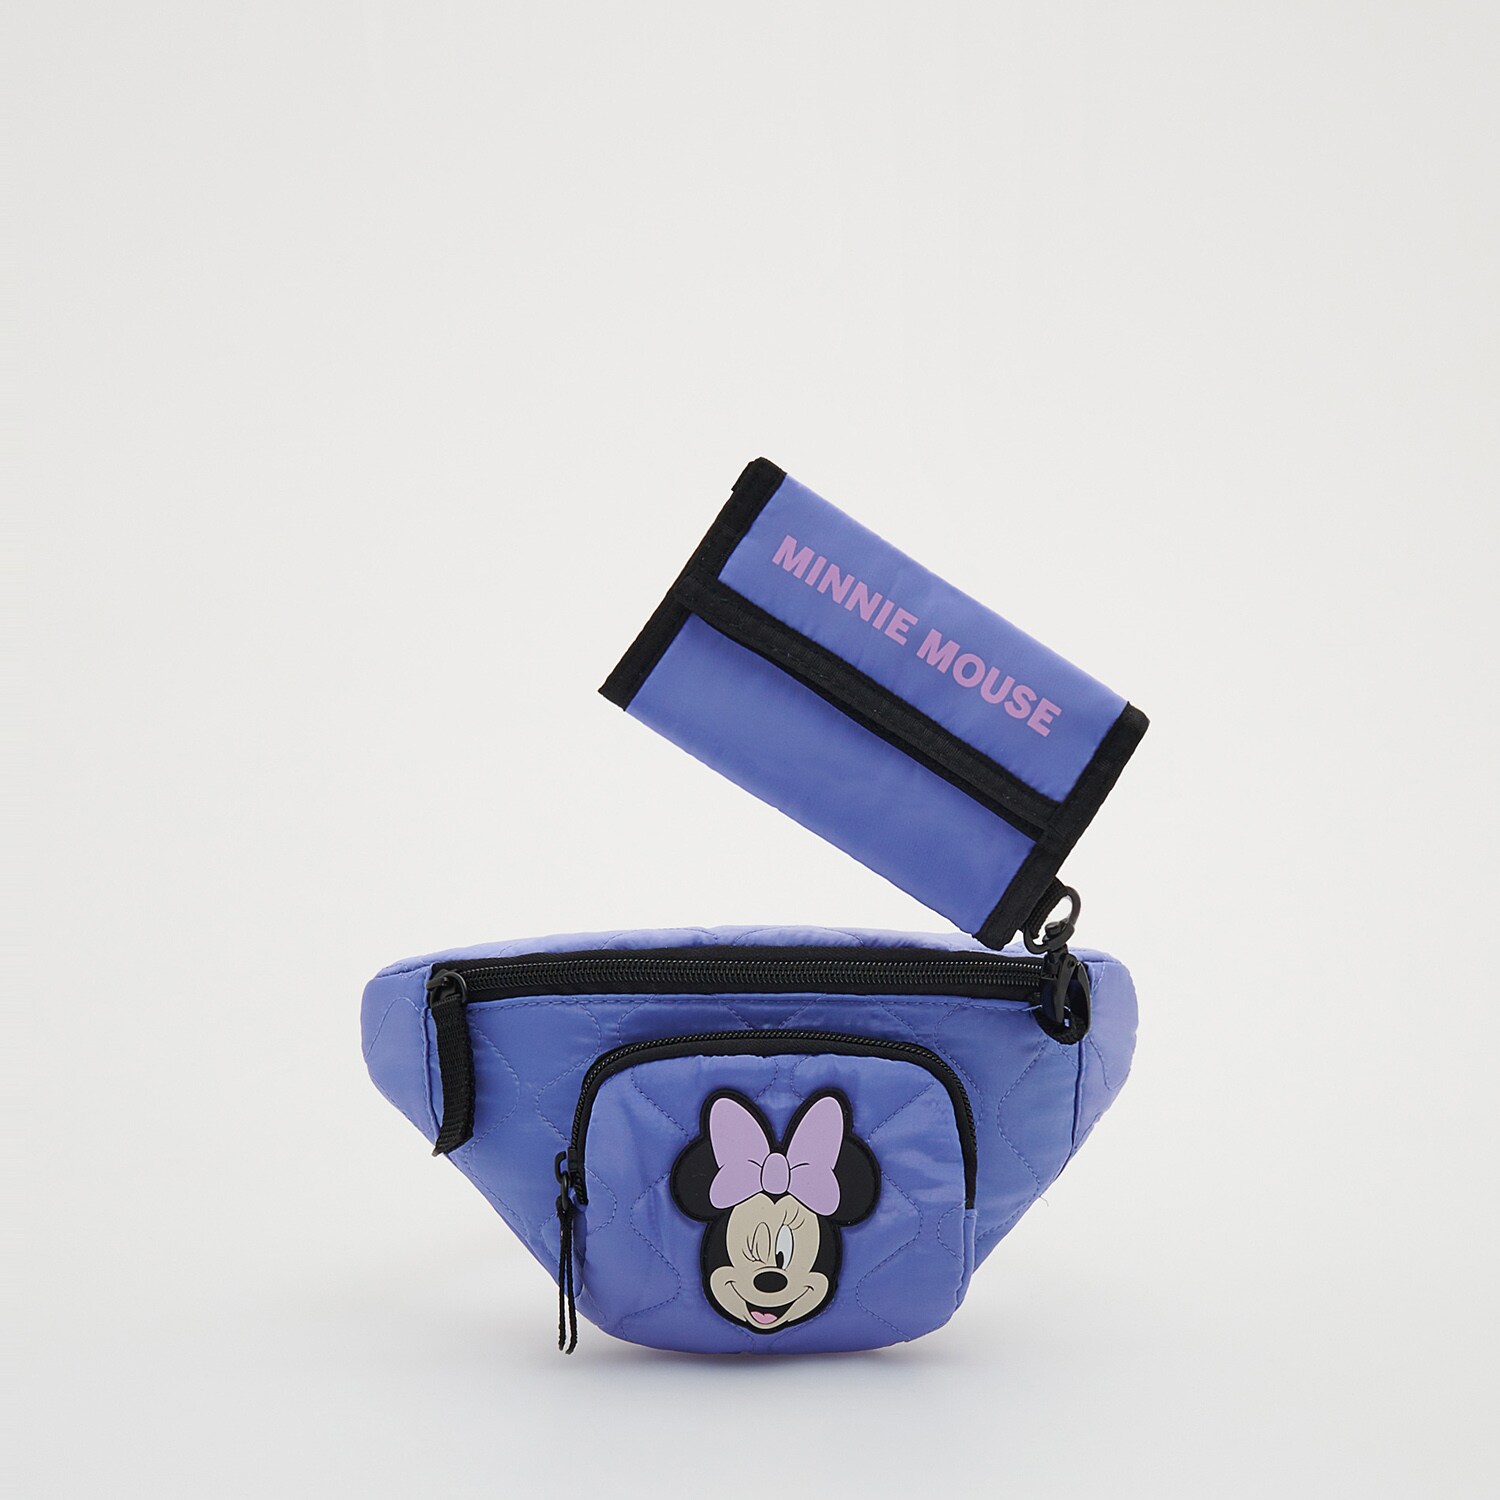 Reserved – Borsetă Minnie Mouse cu portofel – Albastru Albastru imagine noua gjx.ro